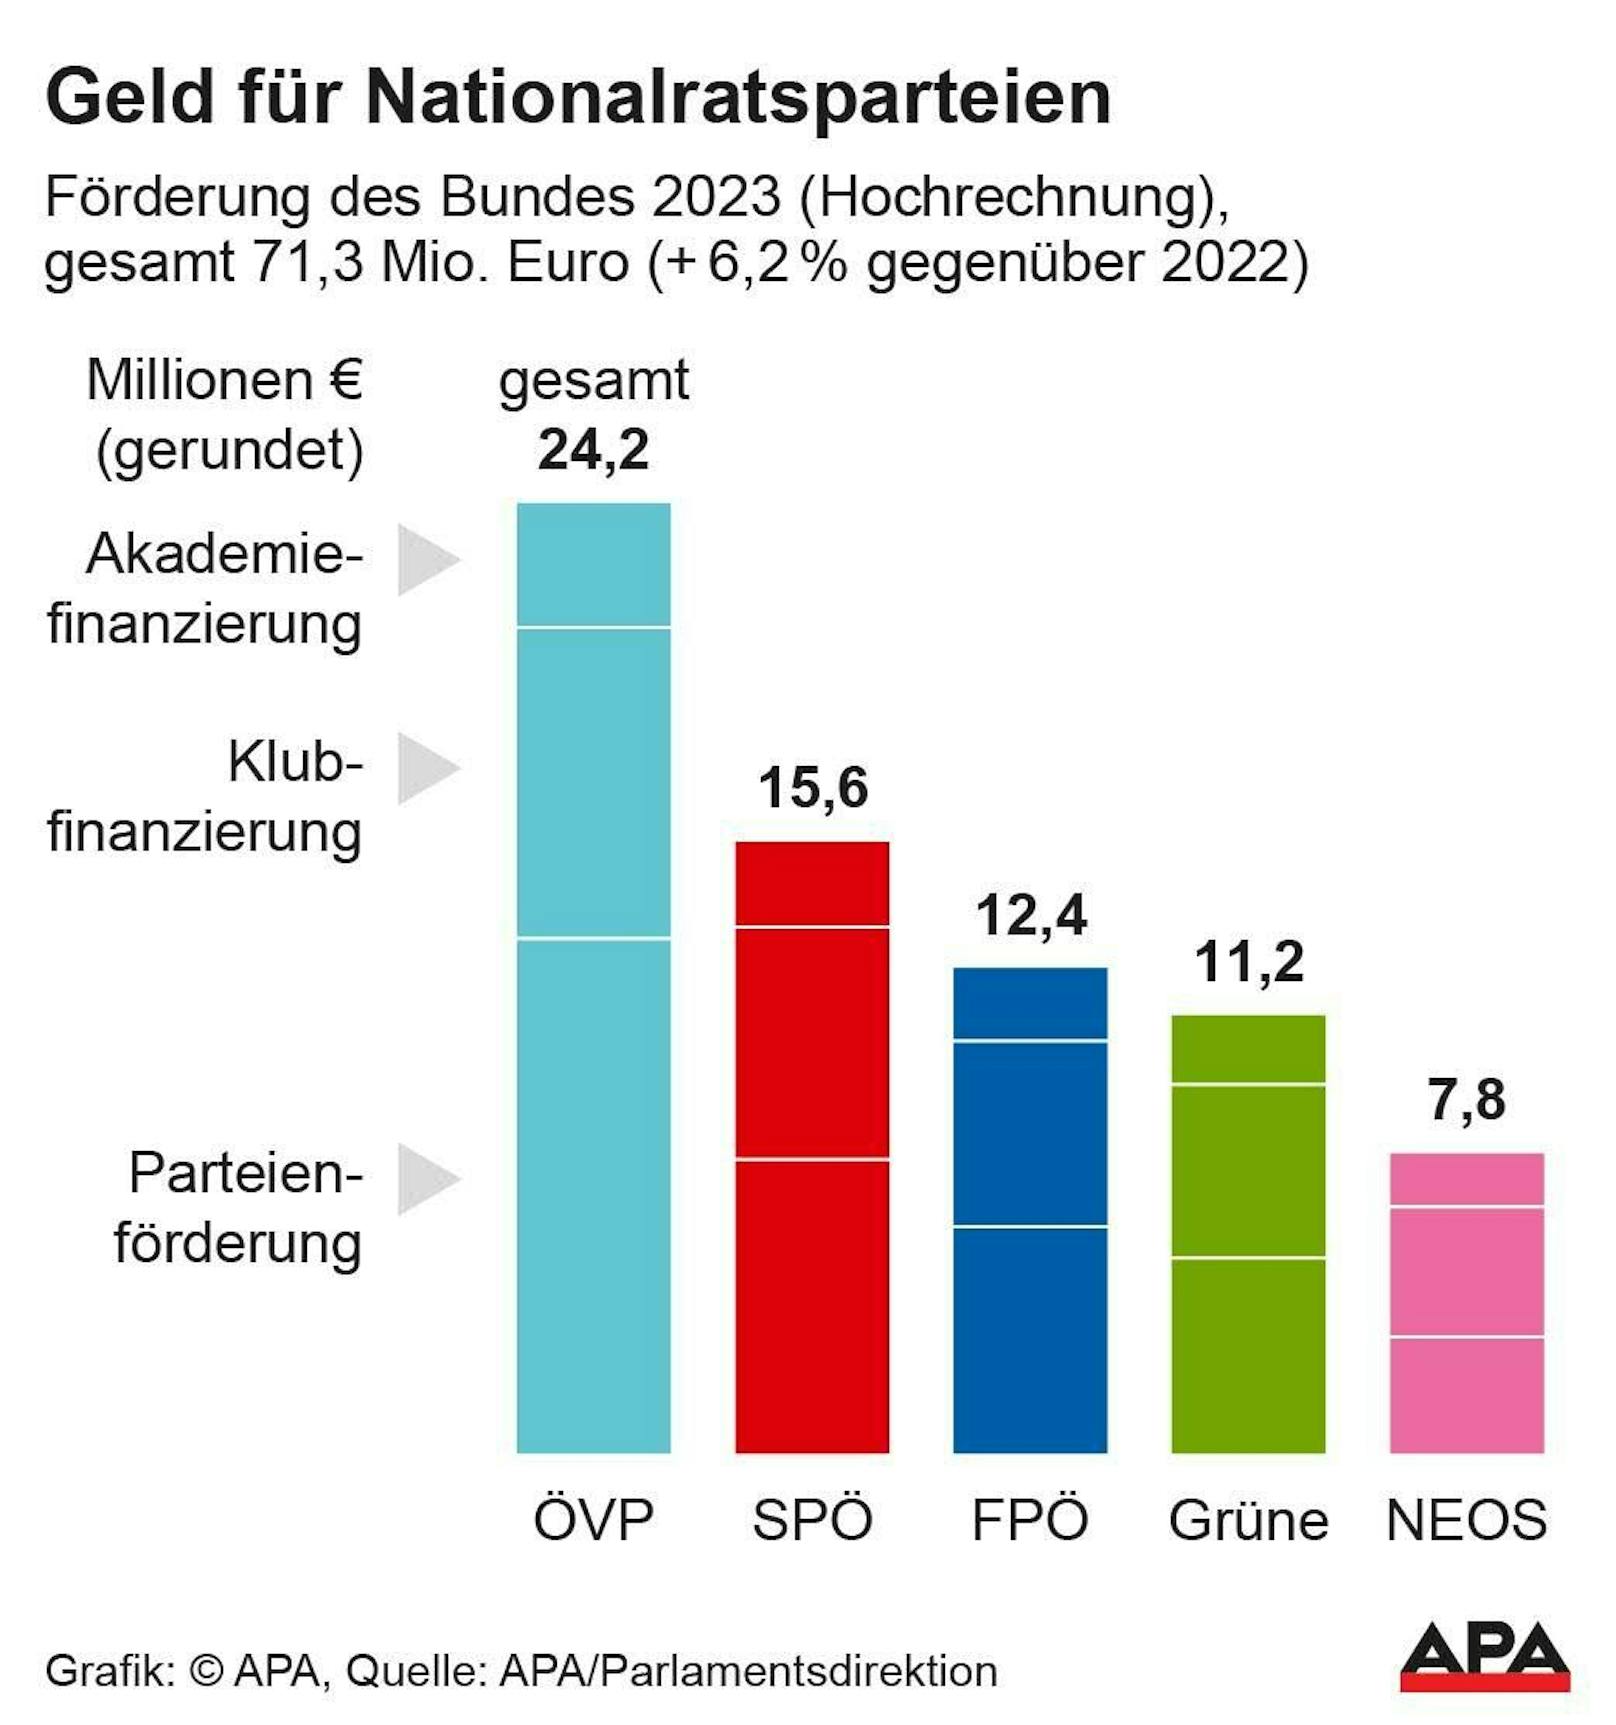 Die ÖVP profitiert am stärksten. 